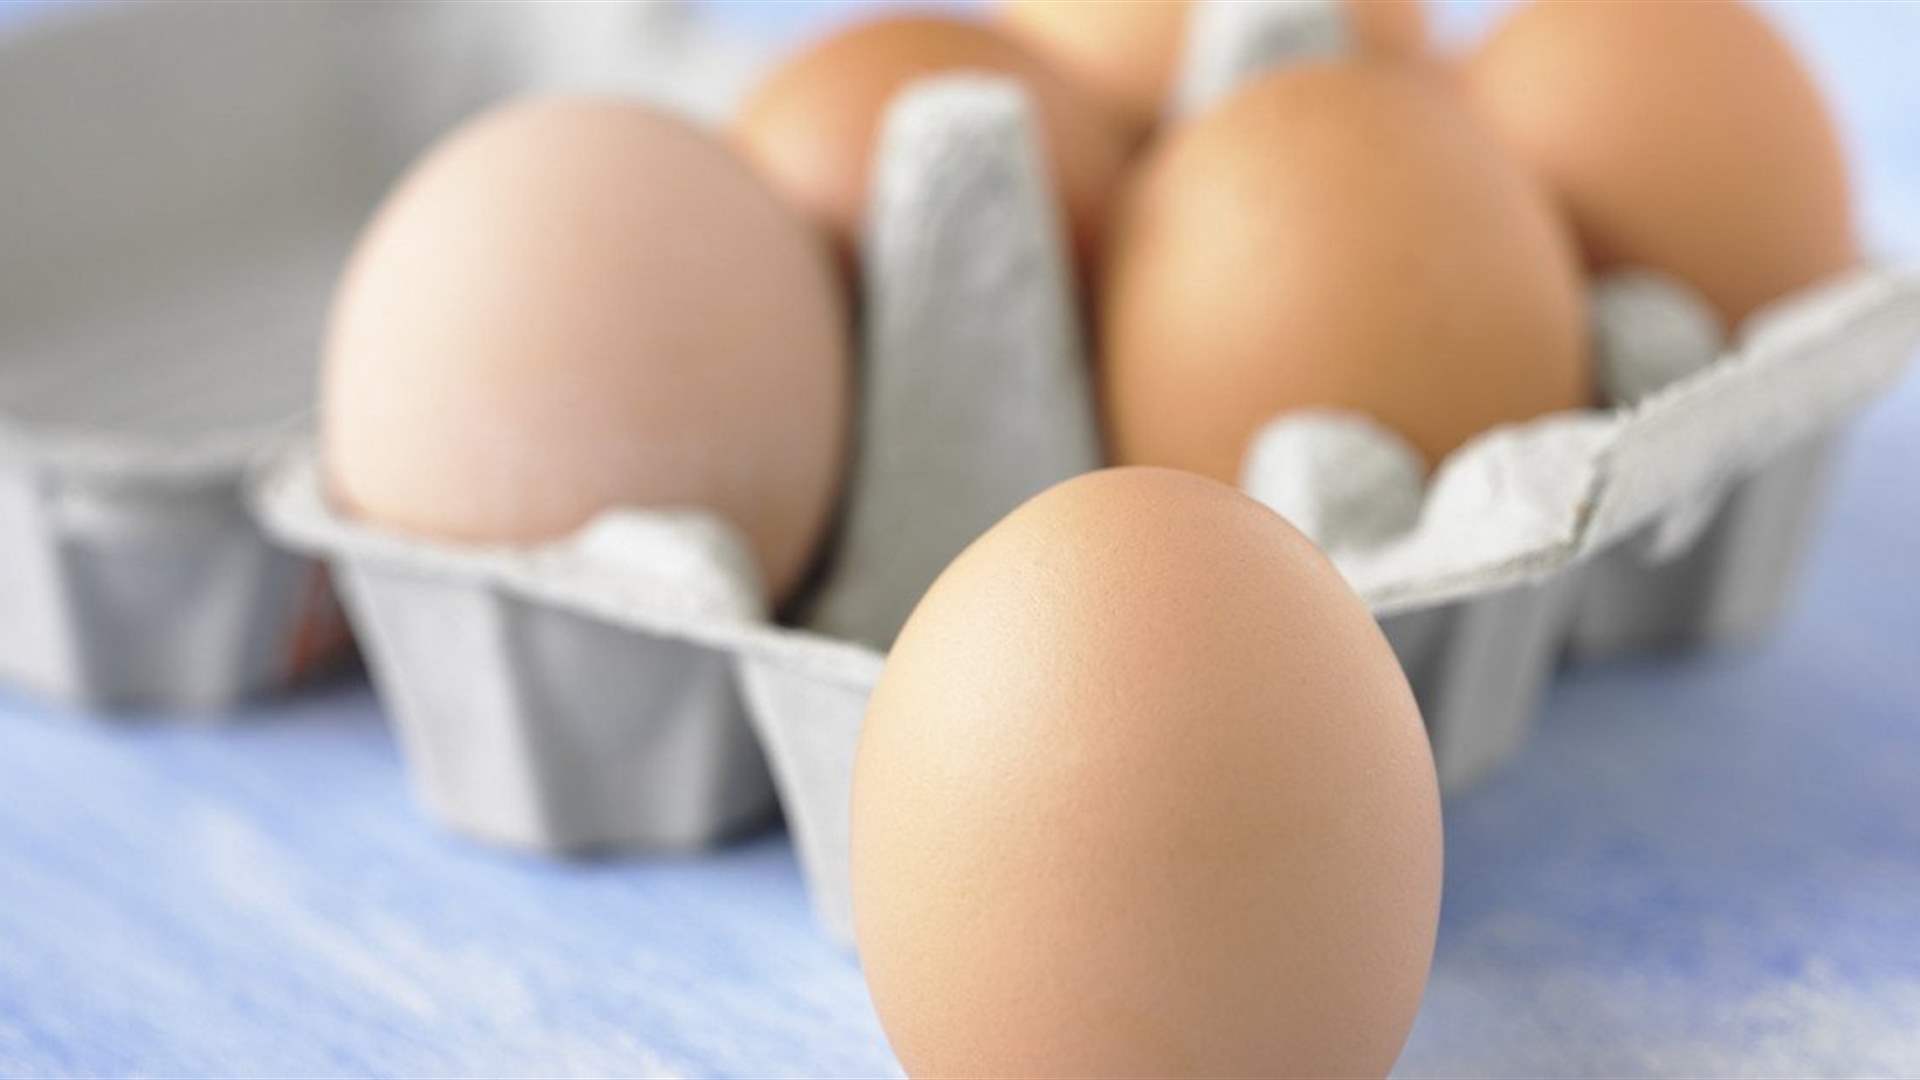 كيف تحافظون على البيض الطازج؟ اتّبعوا هذه النصائح البسيطة